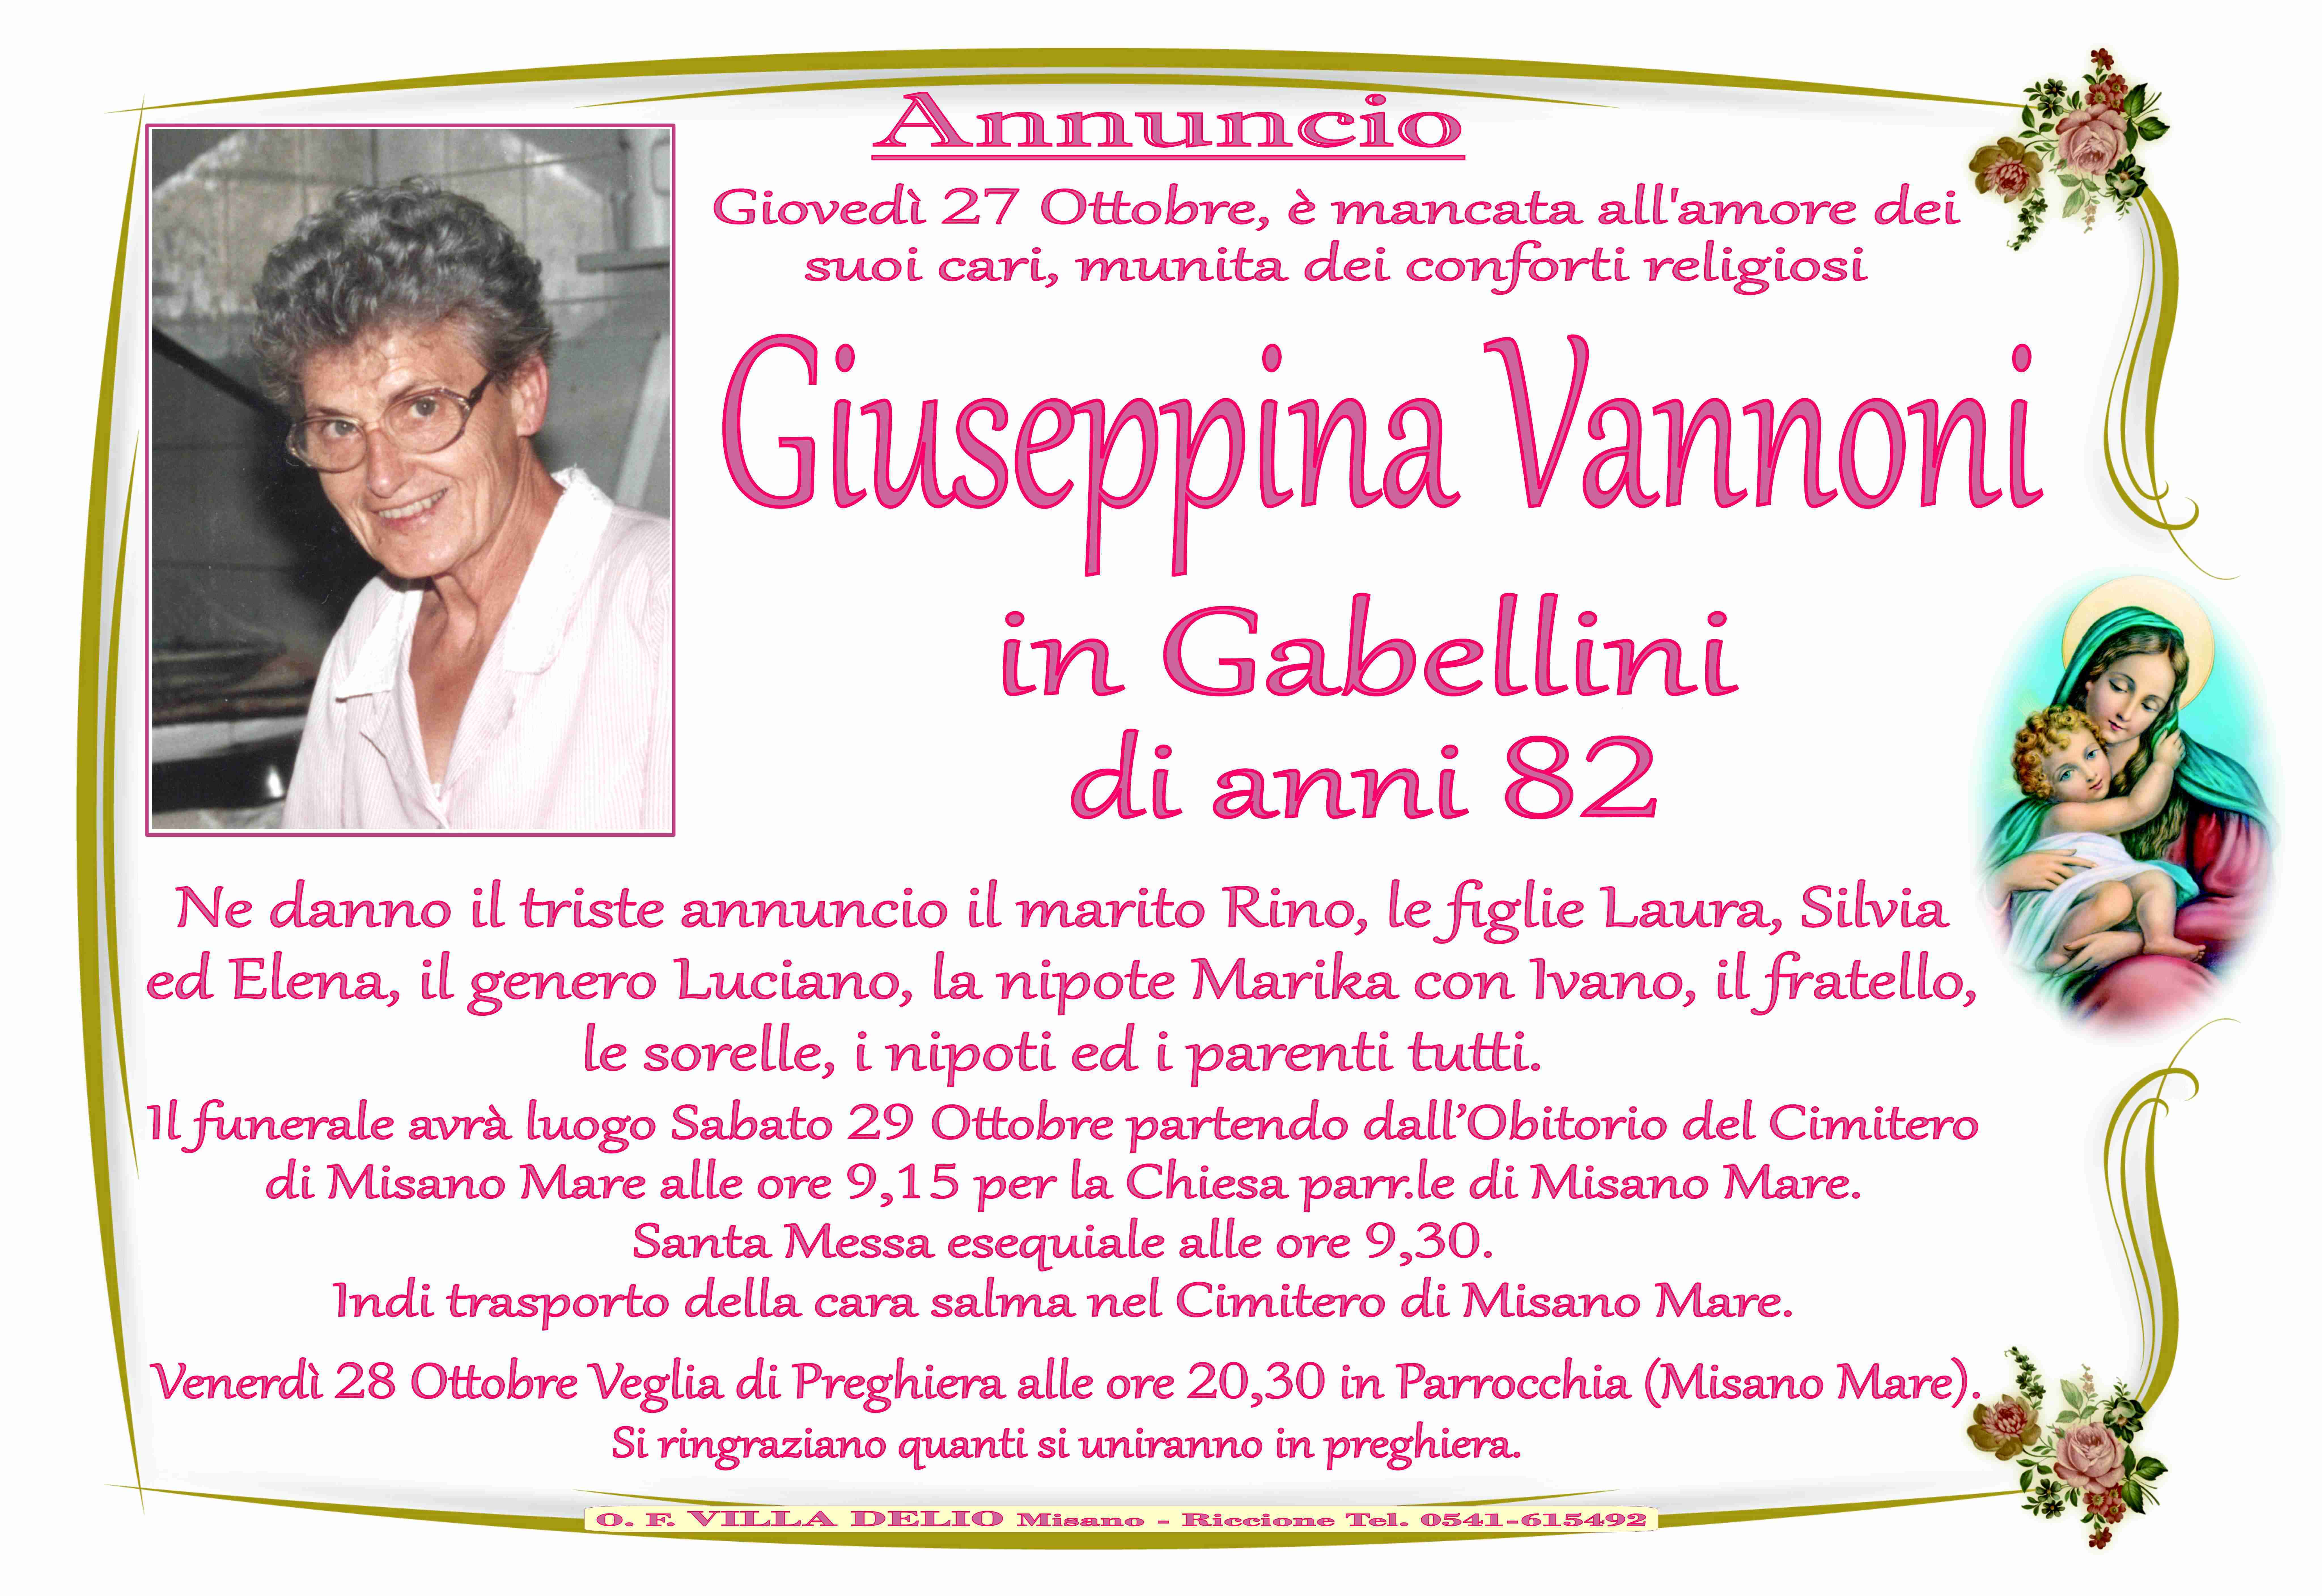 Giuseppina Vannoni